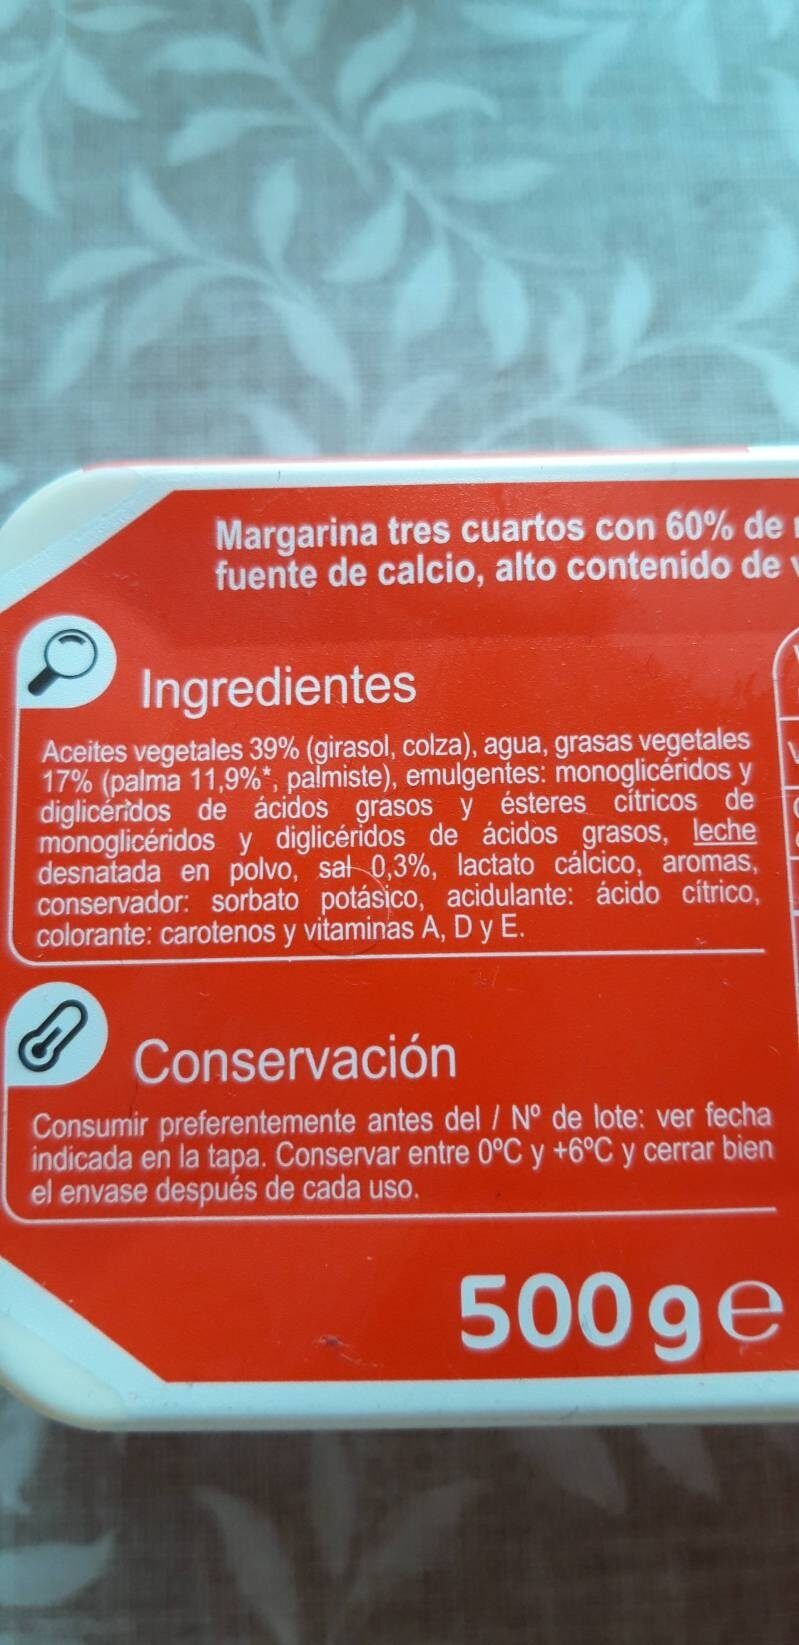 Margarina 3/4 - Ingredientes